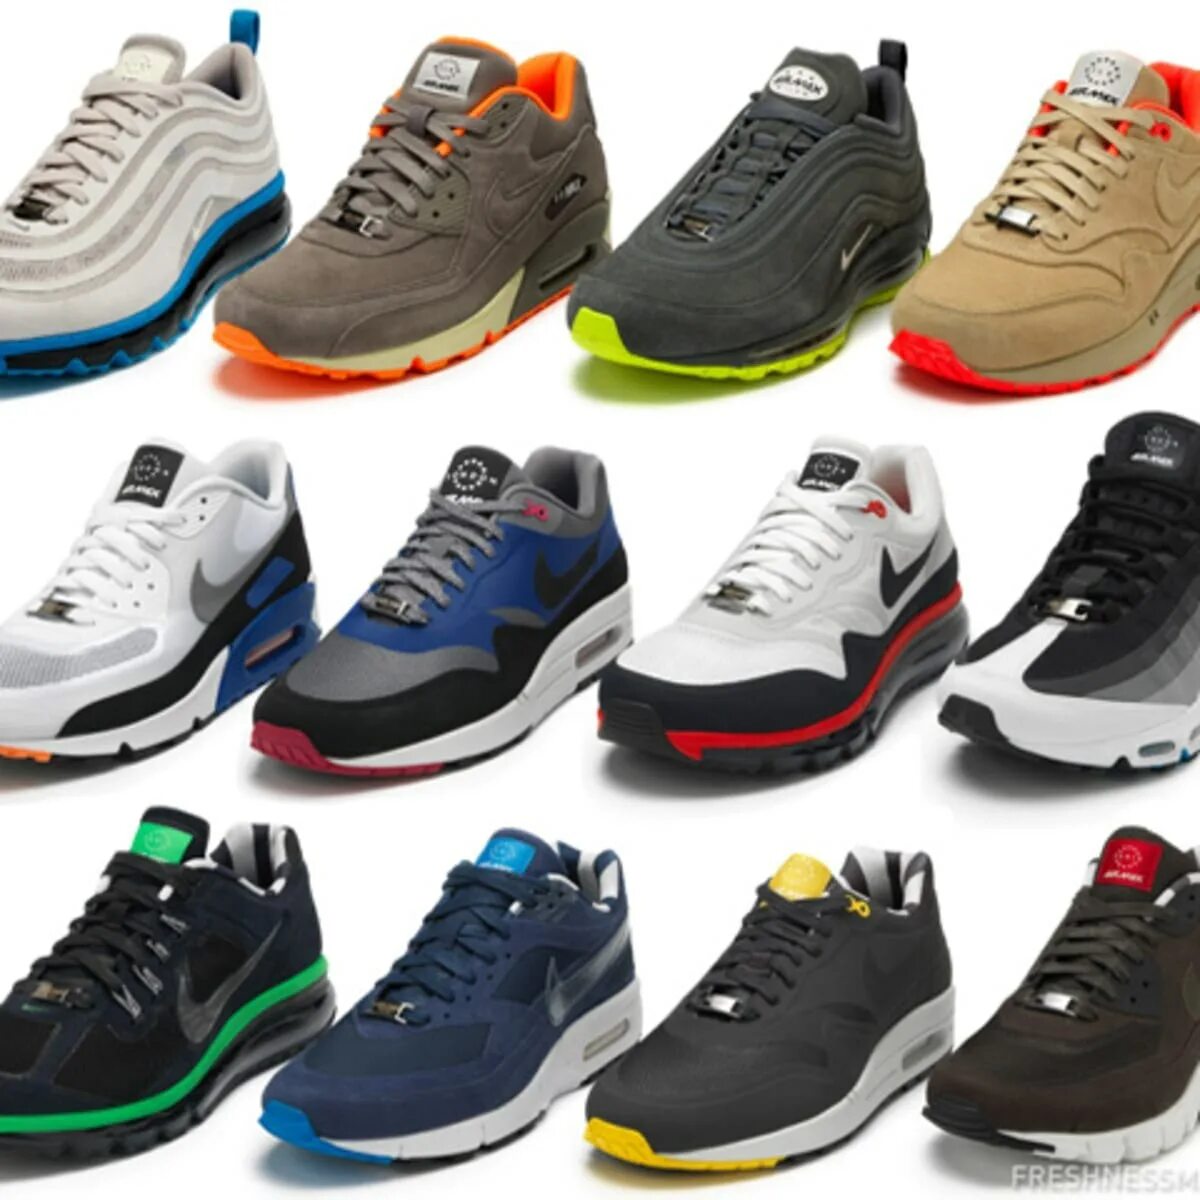 Новый модель кроссовки мужские. Обувь и красофка мужское 2022. Nike Air Max коллекция 2022г. Обувь мужская найк Эйр. Кроссовки мужские фашион Air.